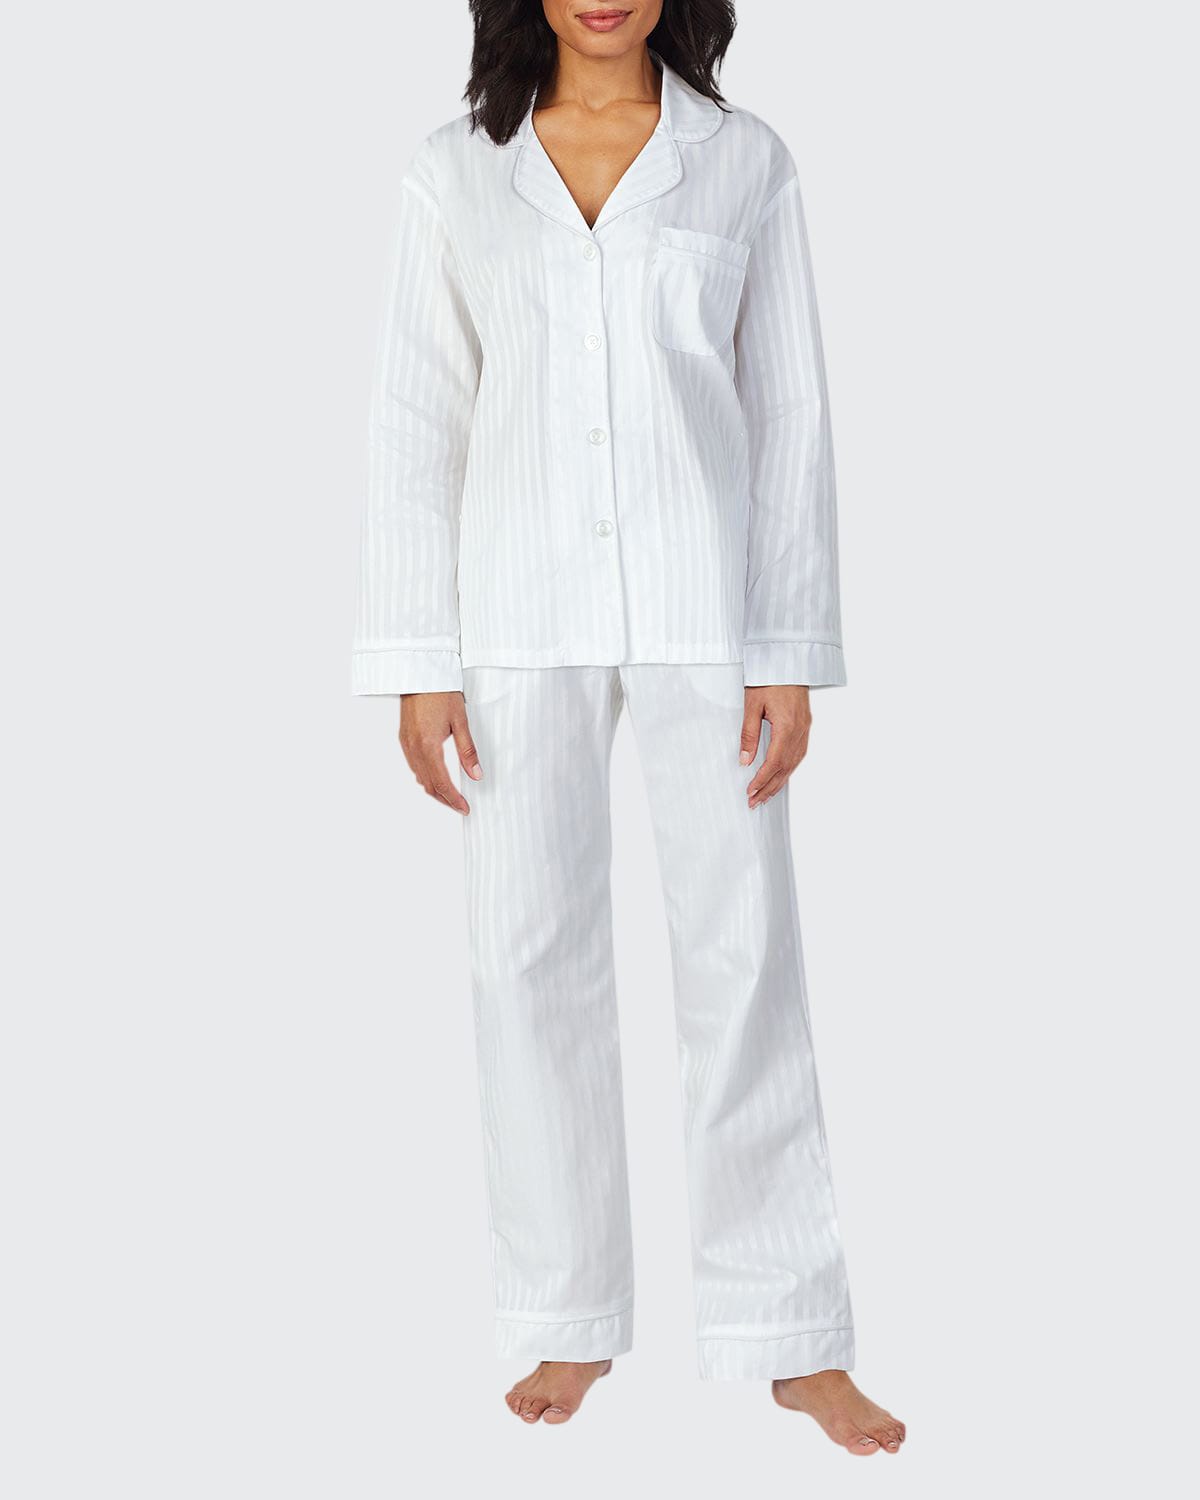 BedHead Pajamas 3D Striped Long-Sleeve Cotton Pajama Set